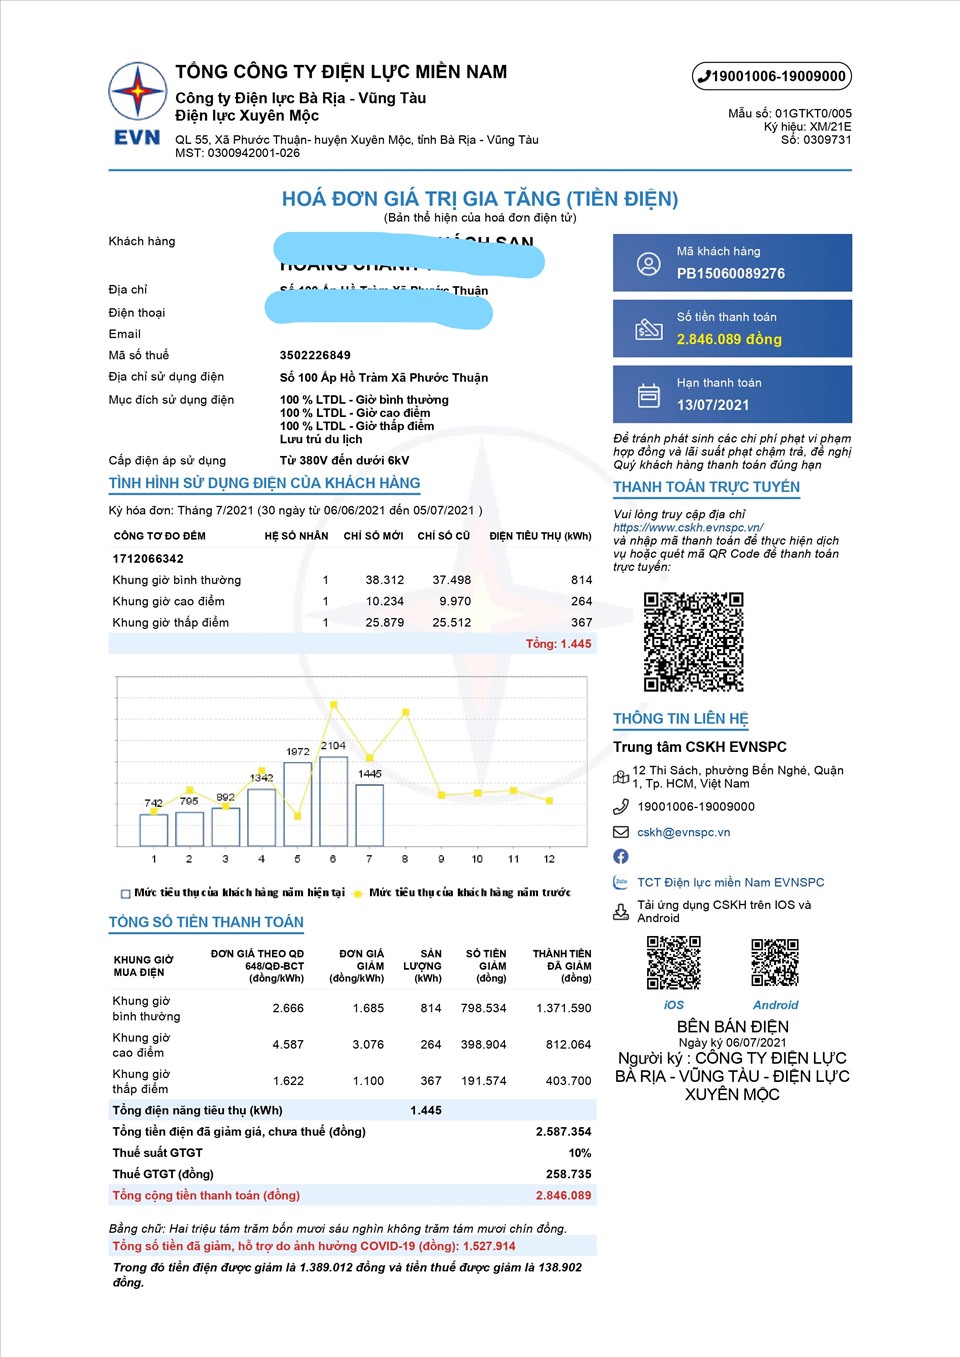 Hóa đơn tiền điện kỳ tháng 7.2021 được giảm giá của khách hàng tại huyện Xuyên Mộc, tỉnh Bà Rịa-Vũng Tàu. Ảnh: EVNSPC cung cấp.